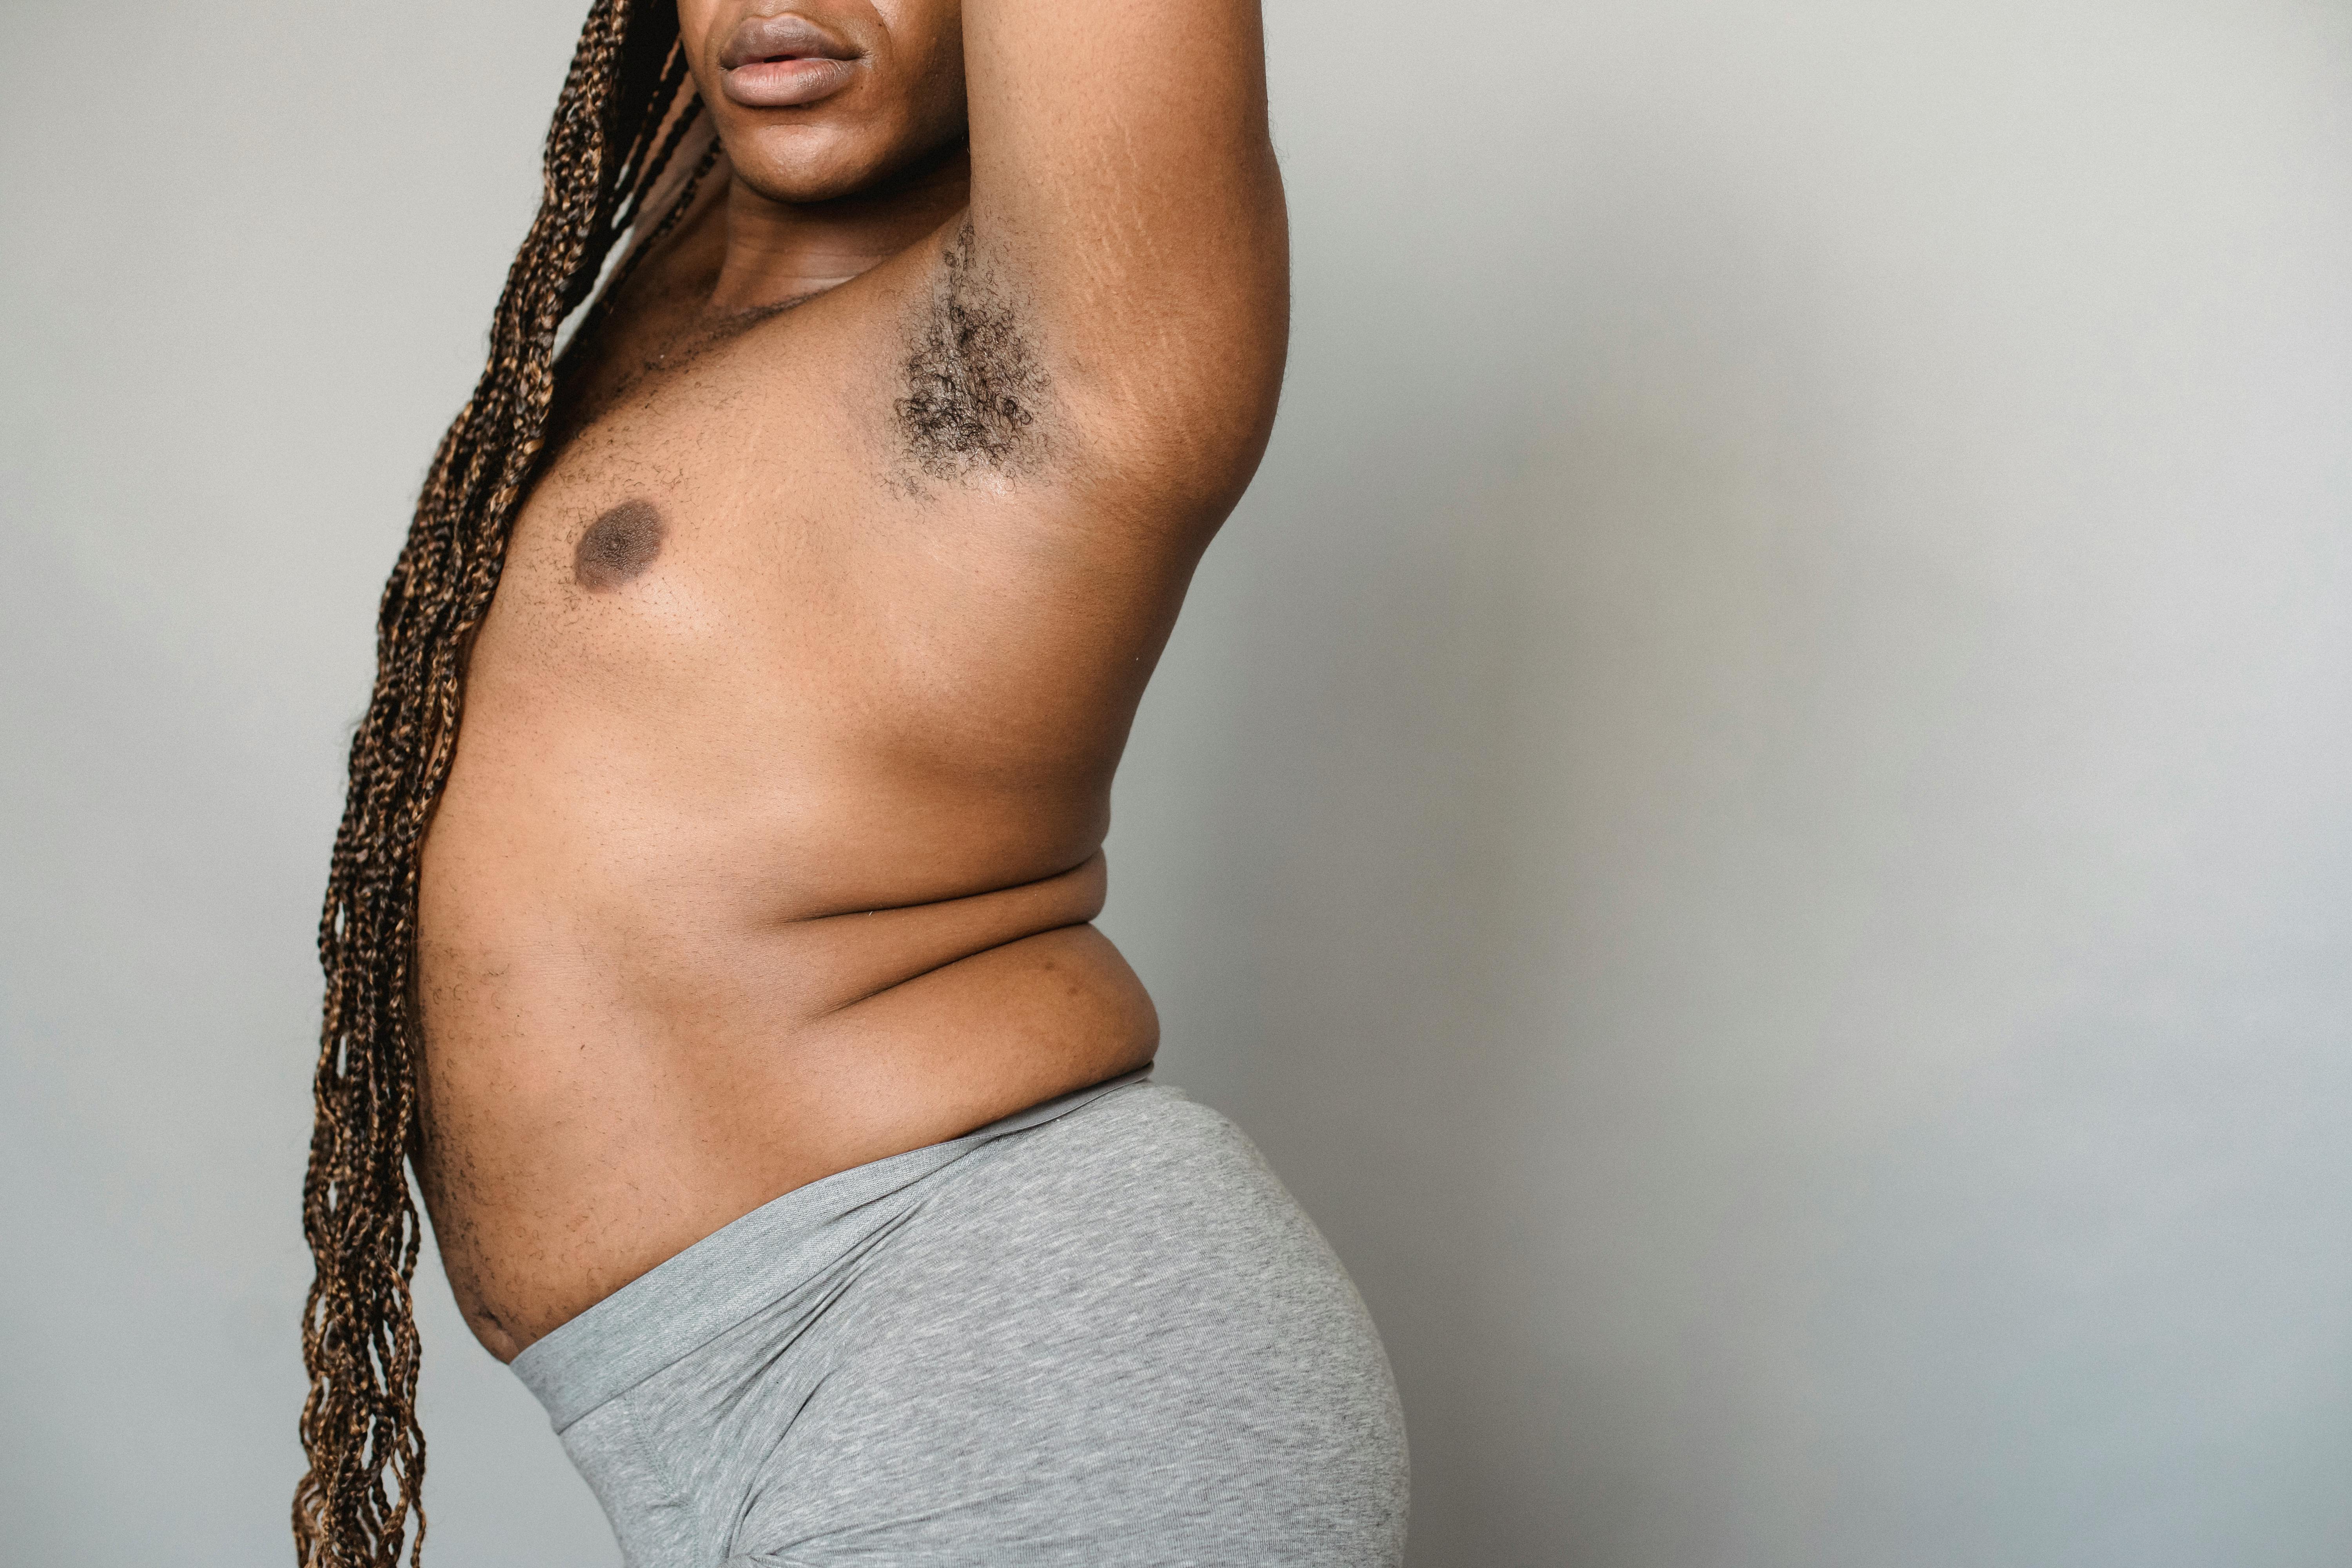 6000px x 4000px - Crop overweight black transgender man in underwear in studio Â· Free Stock  Photo